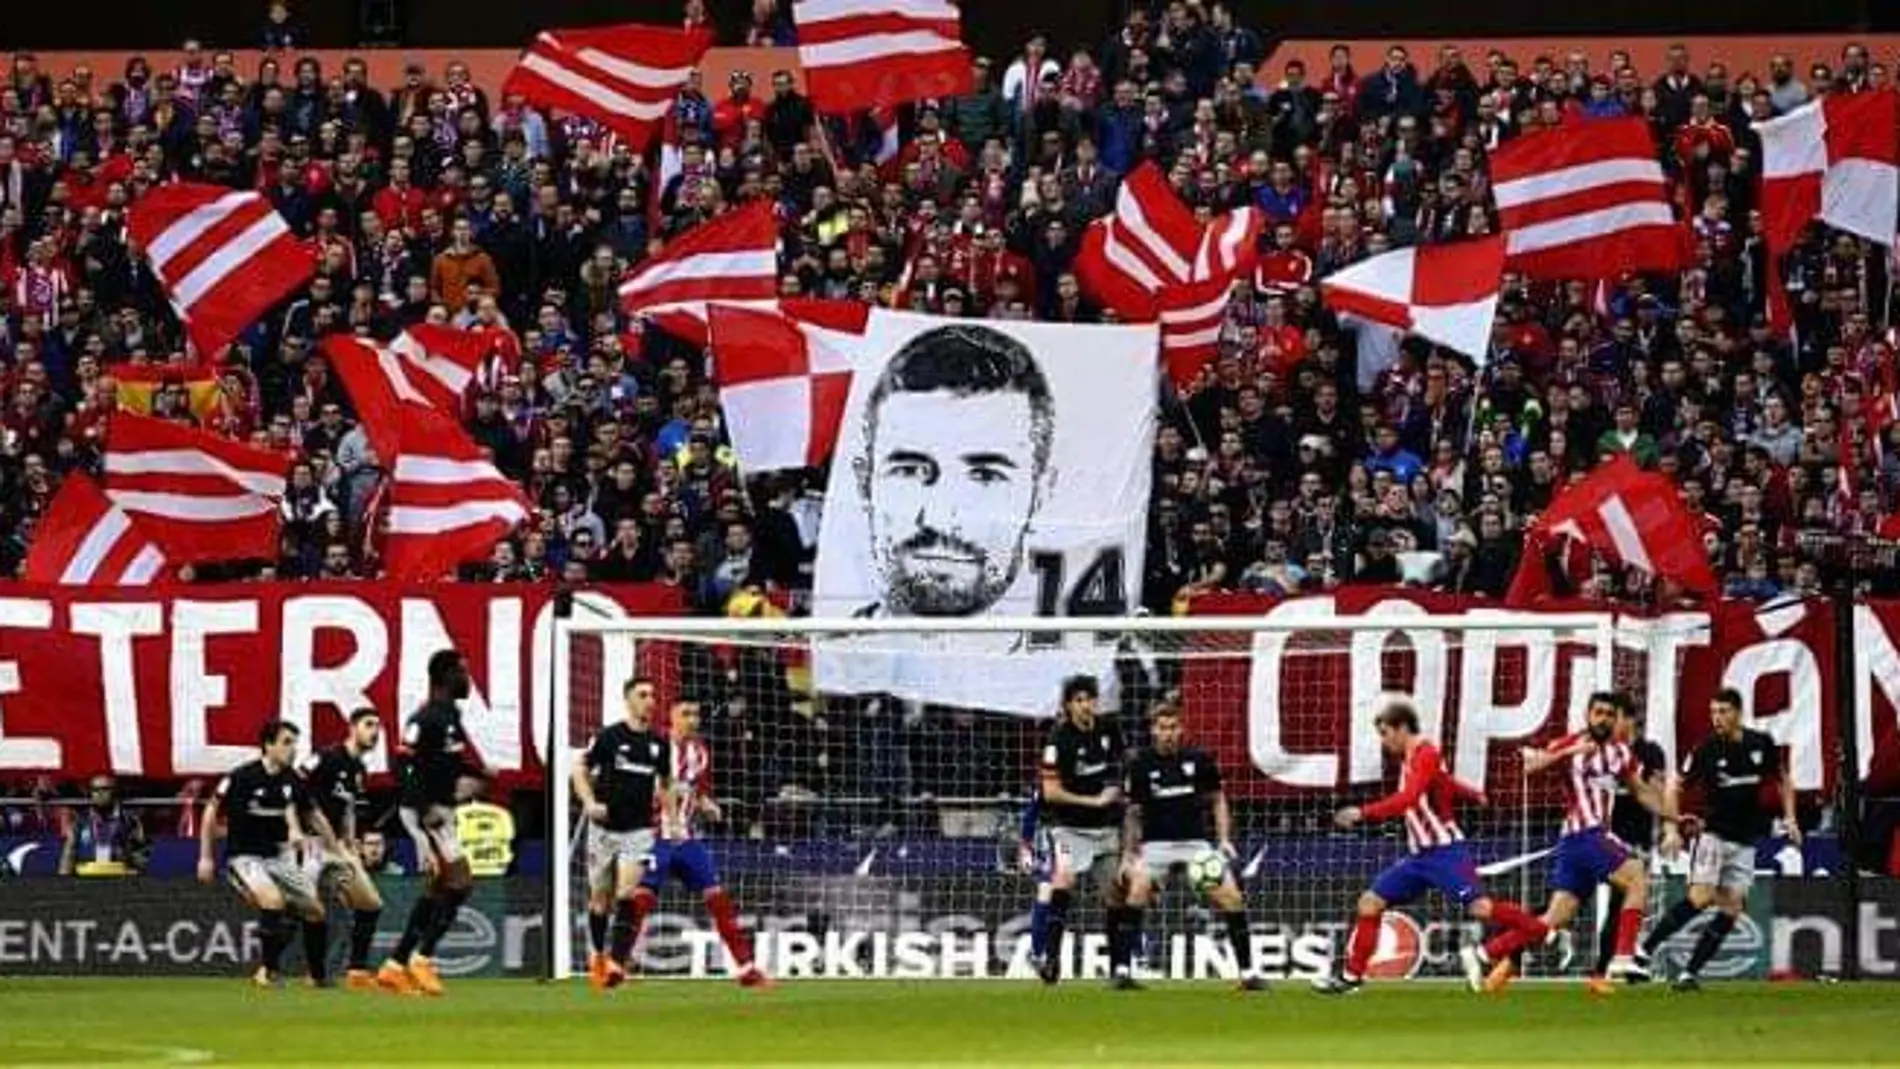 Mosaico de la afición del Atlético en agradecimiento a su "eterno capitán"